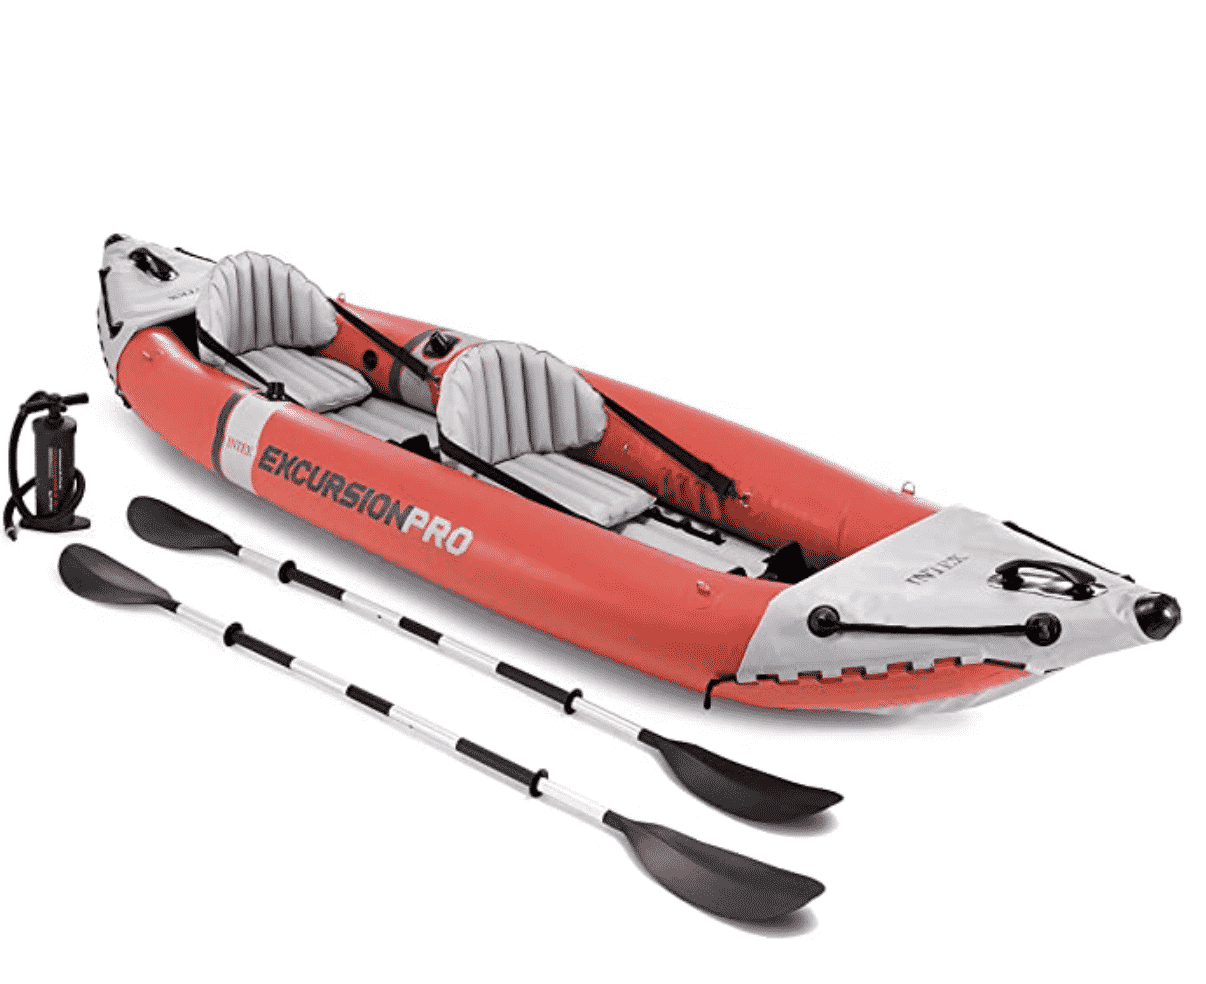 Intex Excursion Pro Kayak, Professional Series Inflatable Kayak